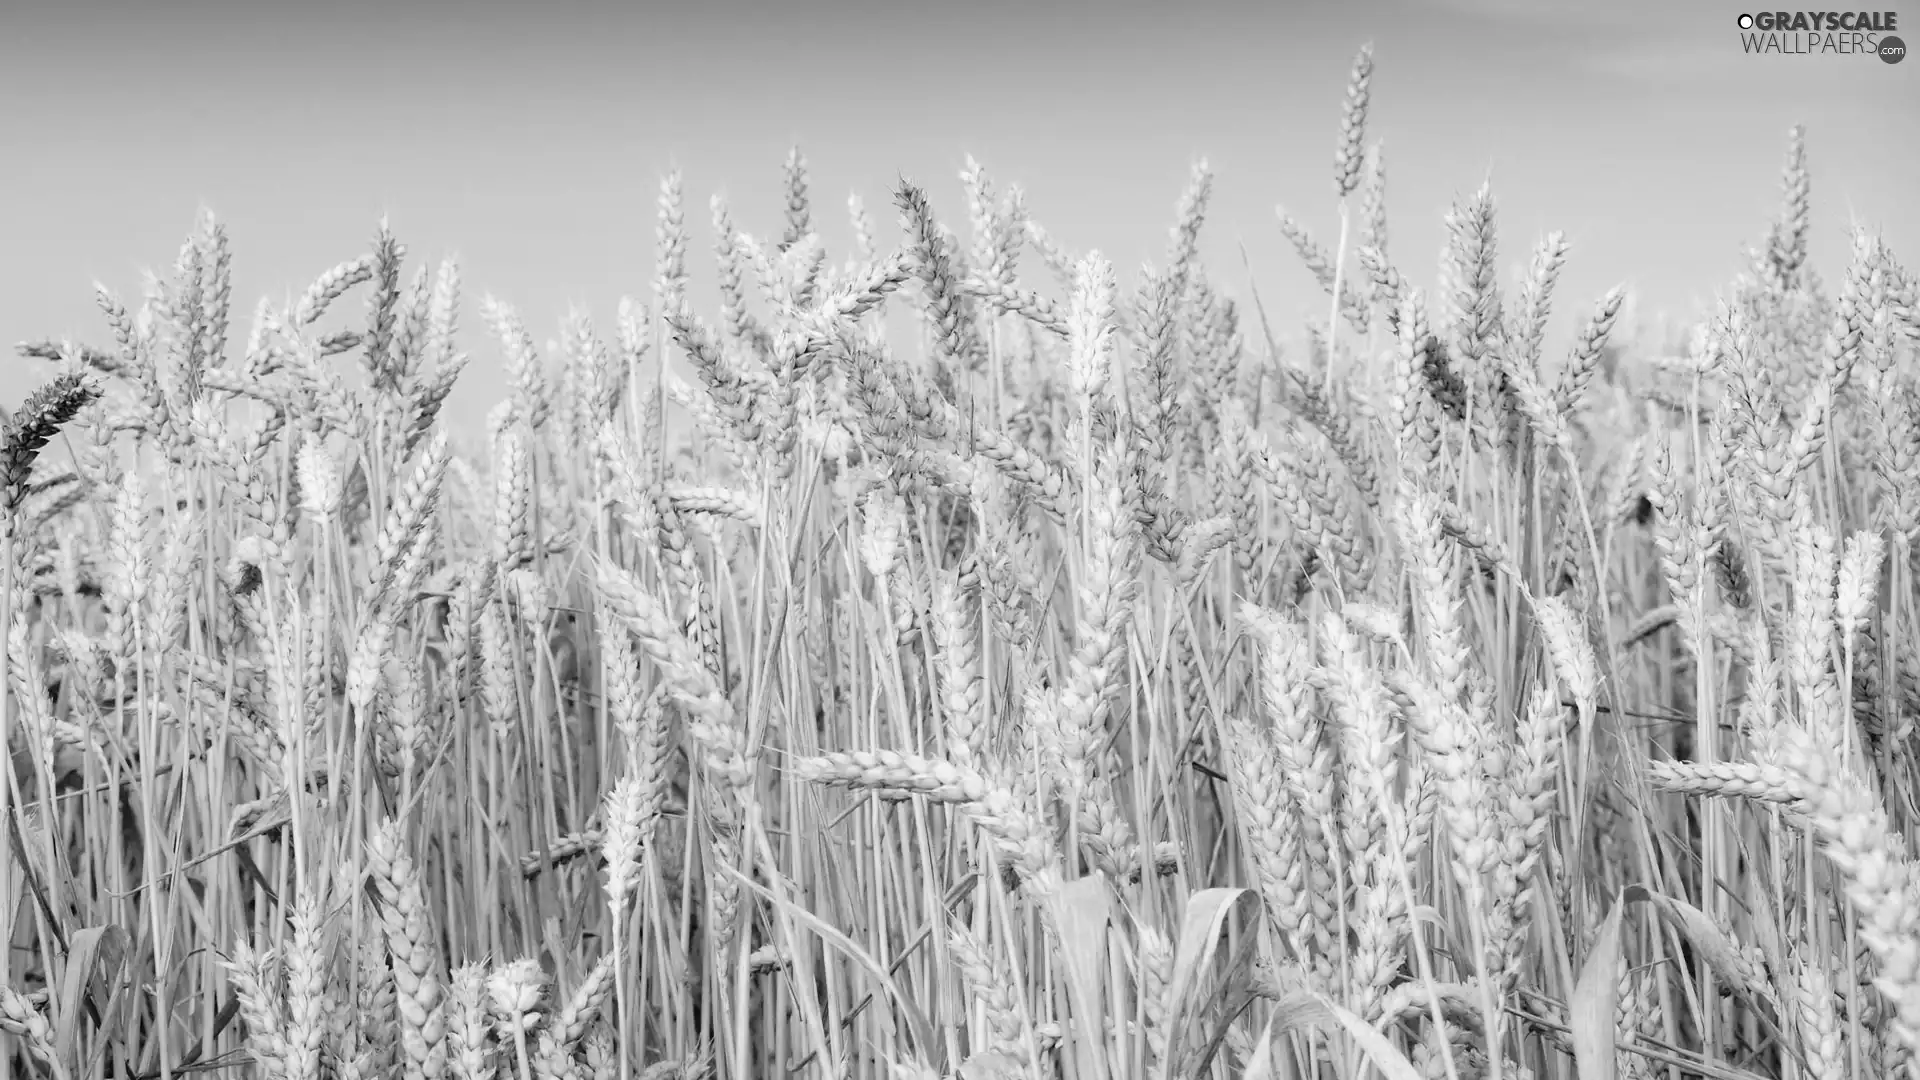 Field, wheat